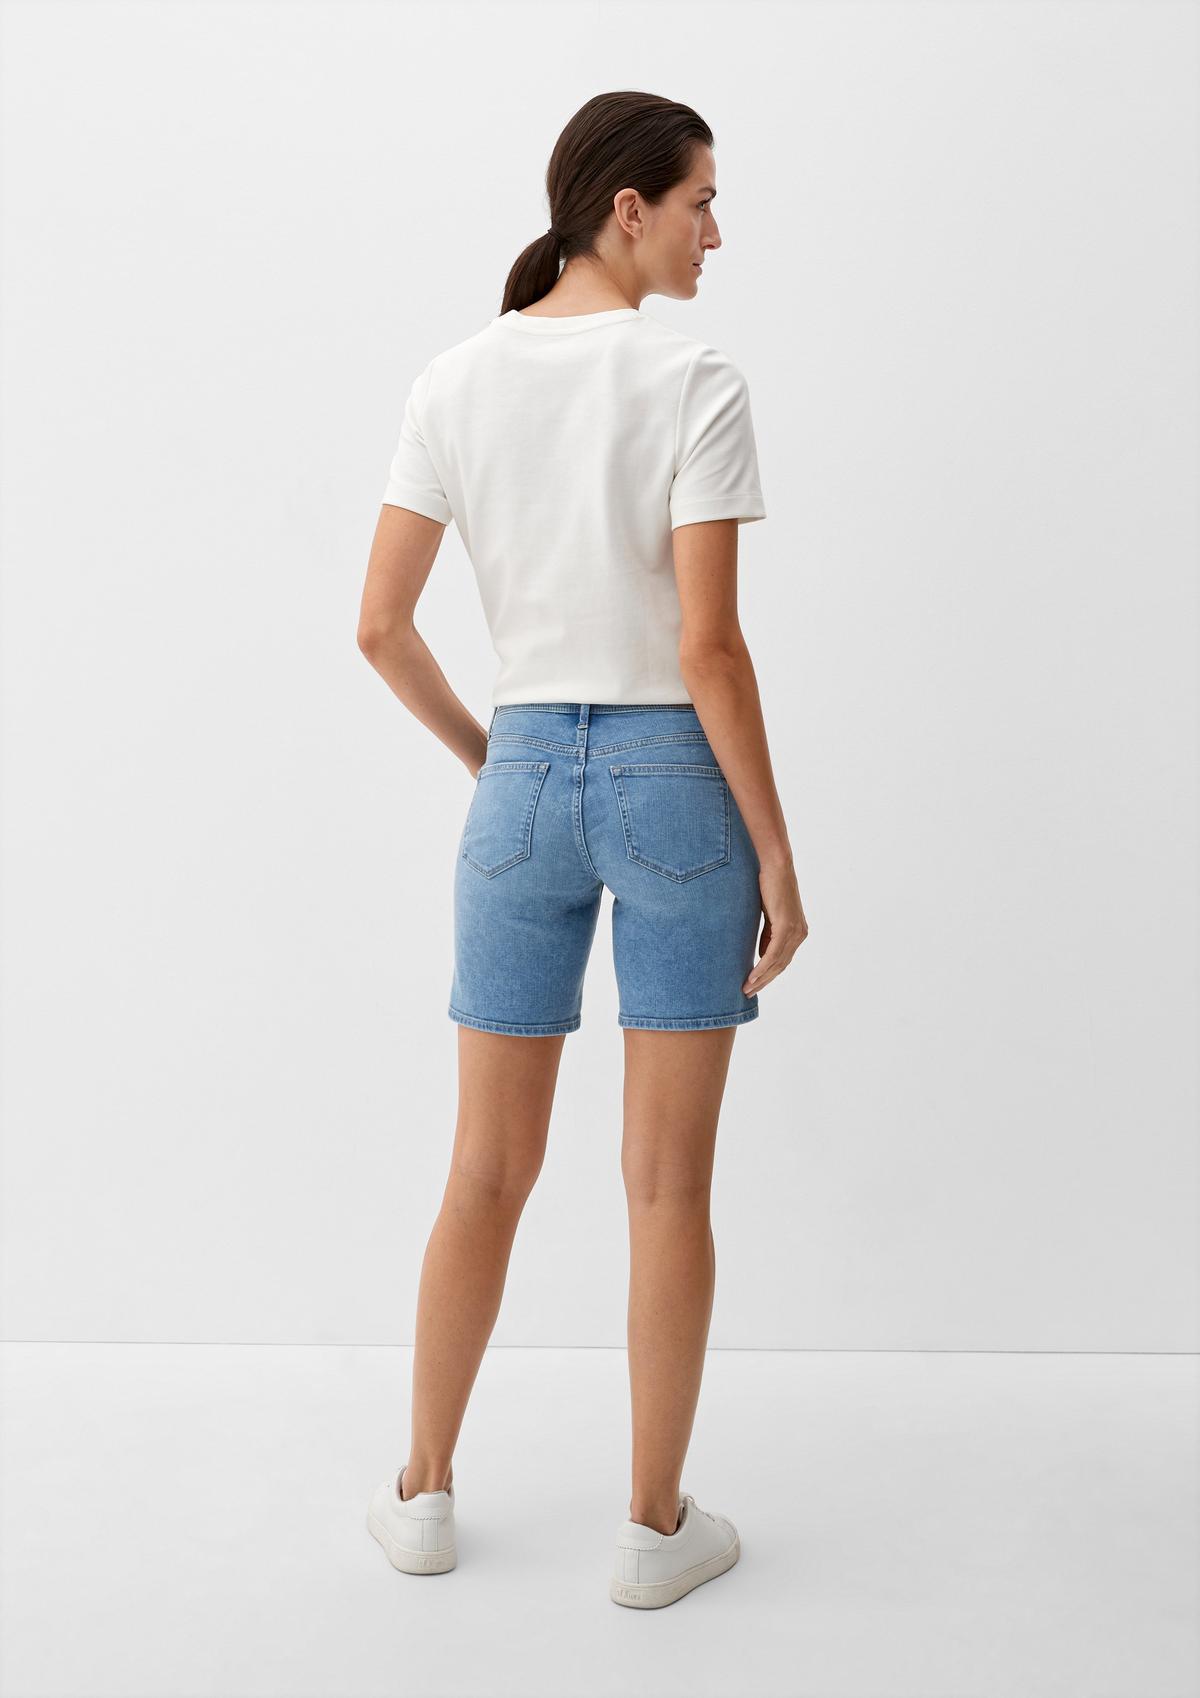 - shorts with Slim saddle blue yoke light fit: Bermuda